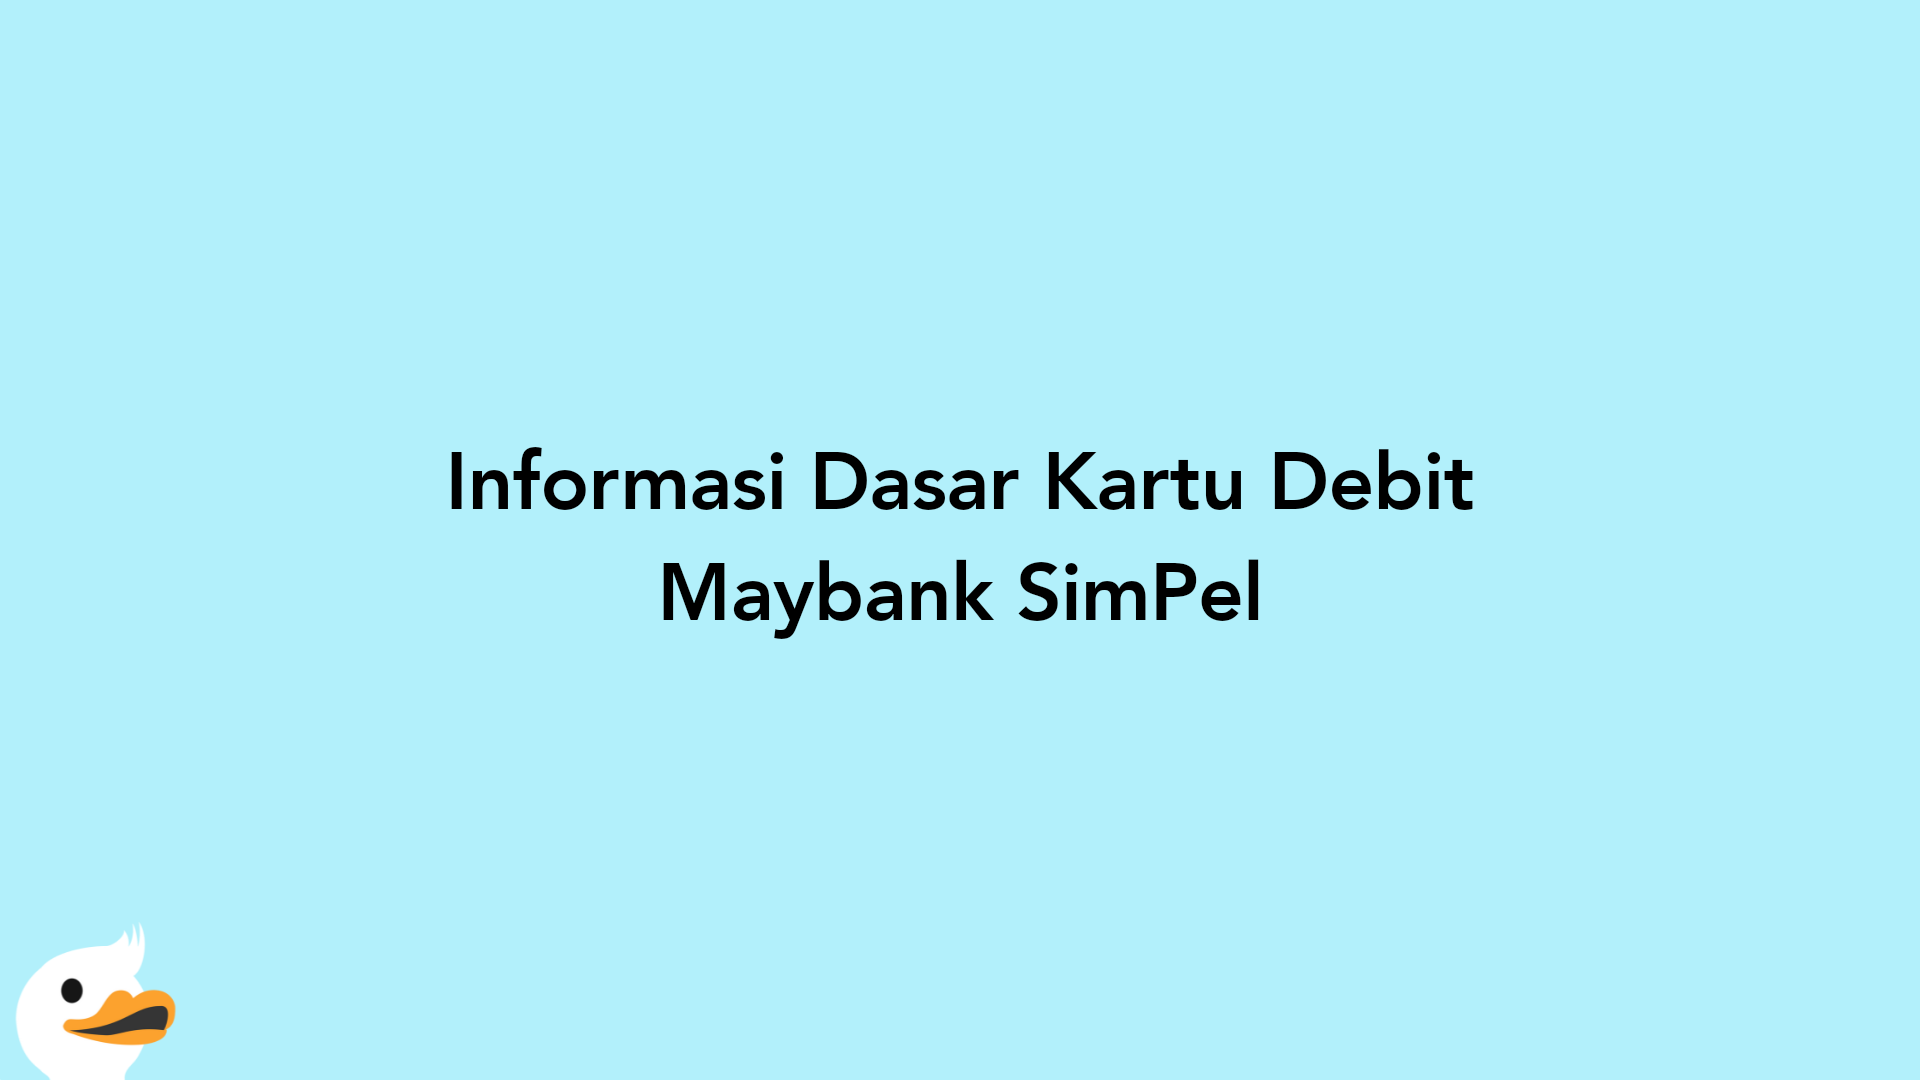 Informasi Dasar Kartu Debit Maybank SimPel